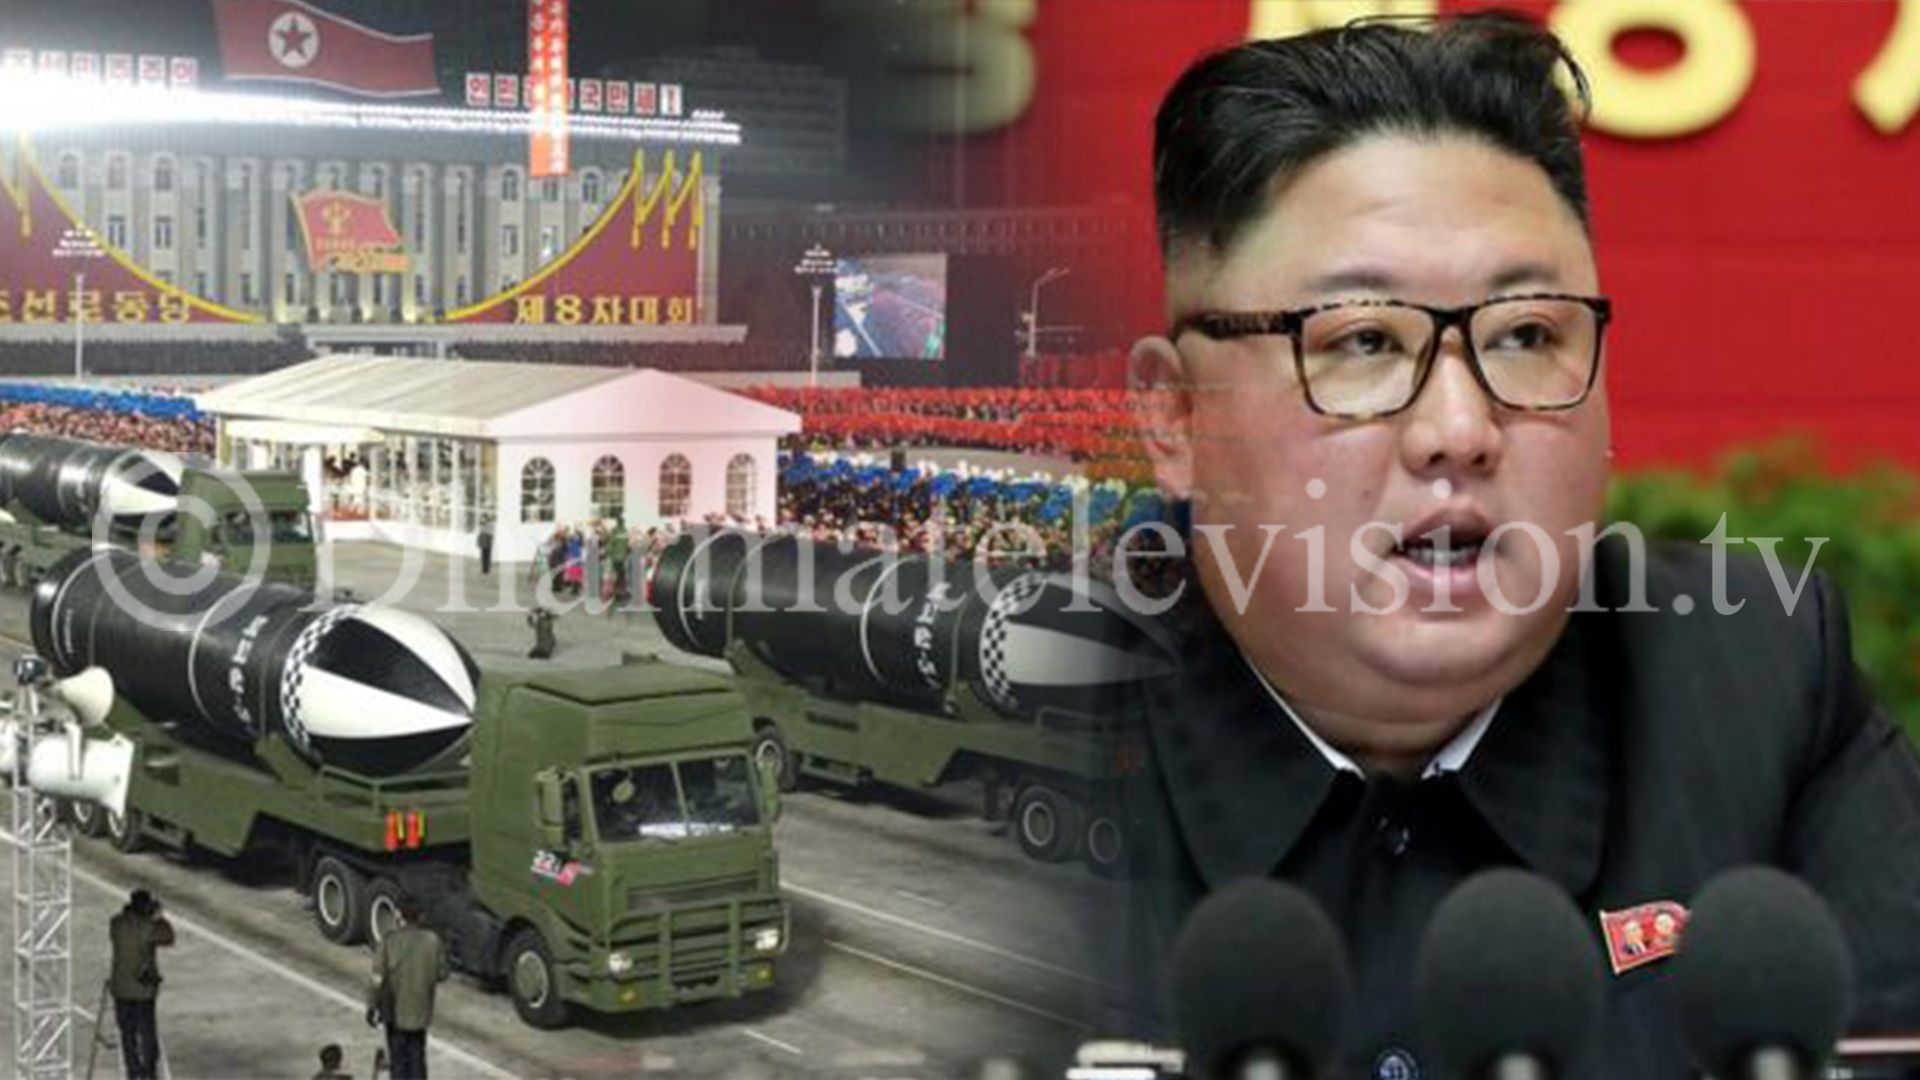 संसारकै सबैभन्दा शक्तिशाली अस्त्र सार्वजनिक गरिएको उत्तर कोरियाको दाबी